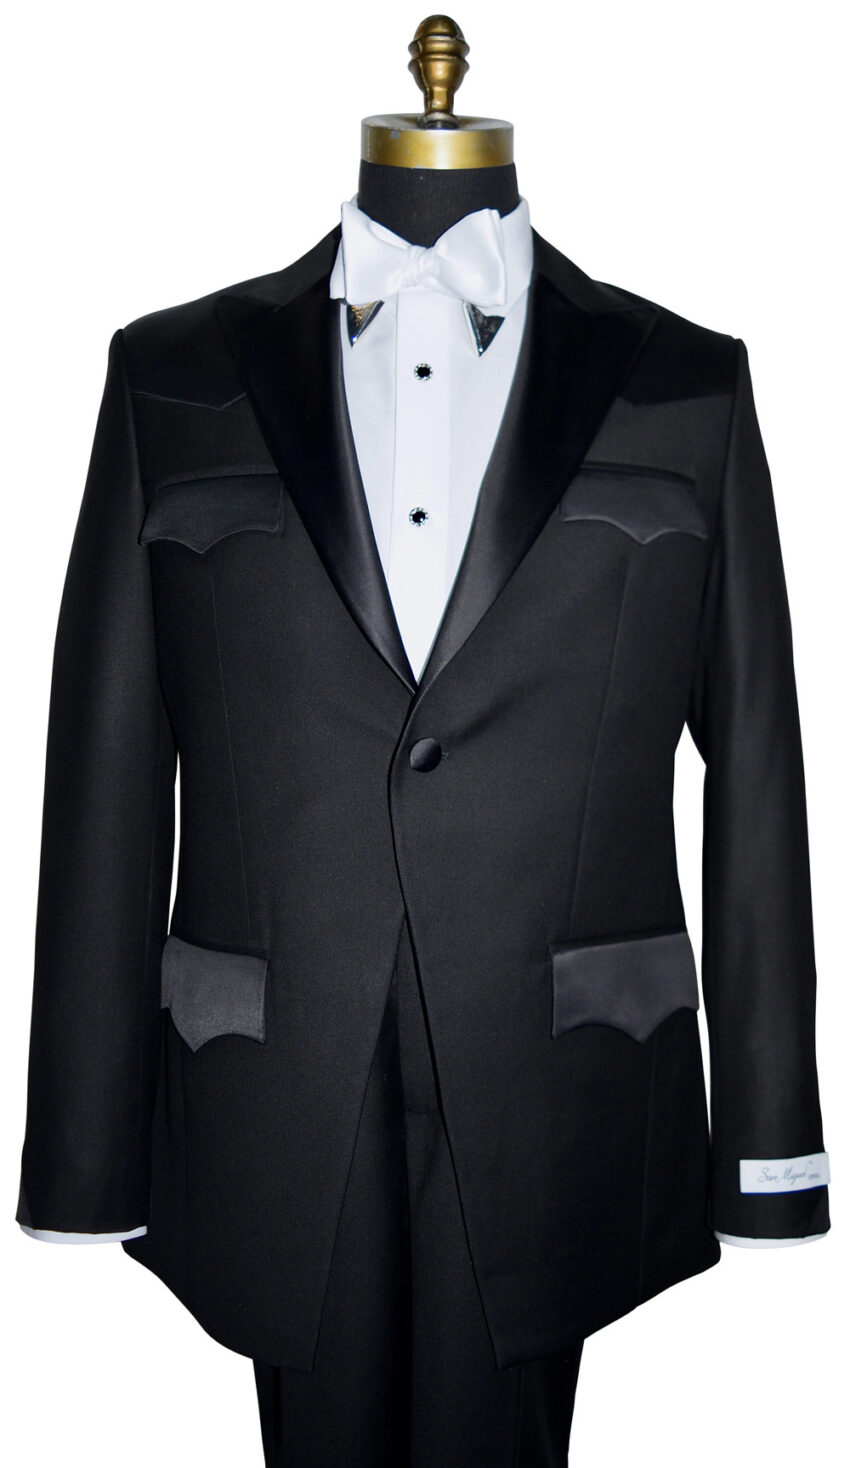 Western Tuxedo With Short Coat